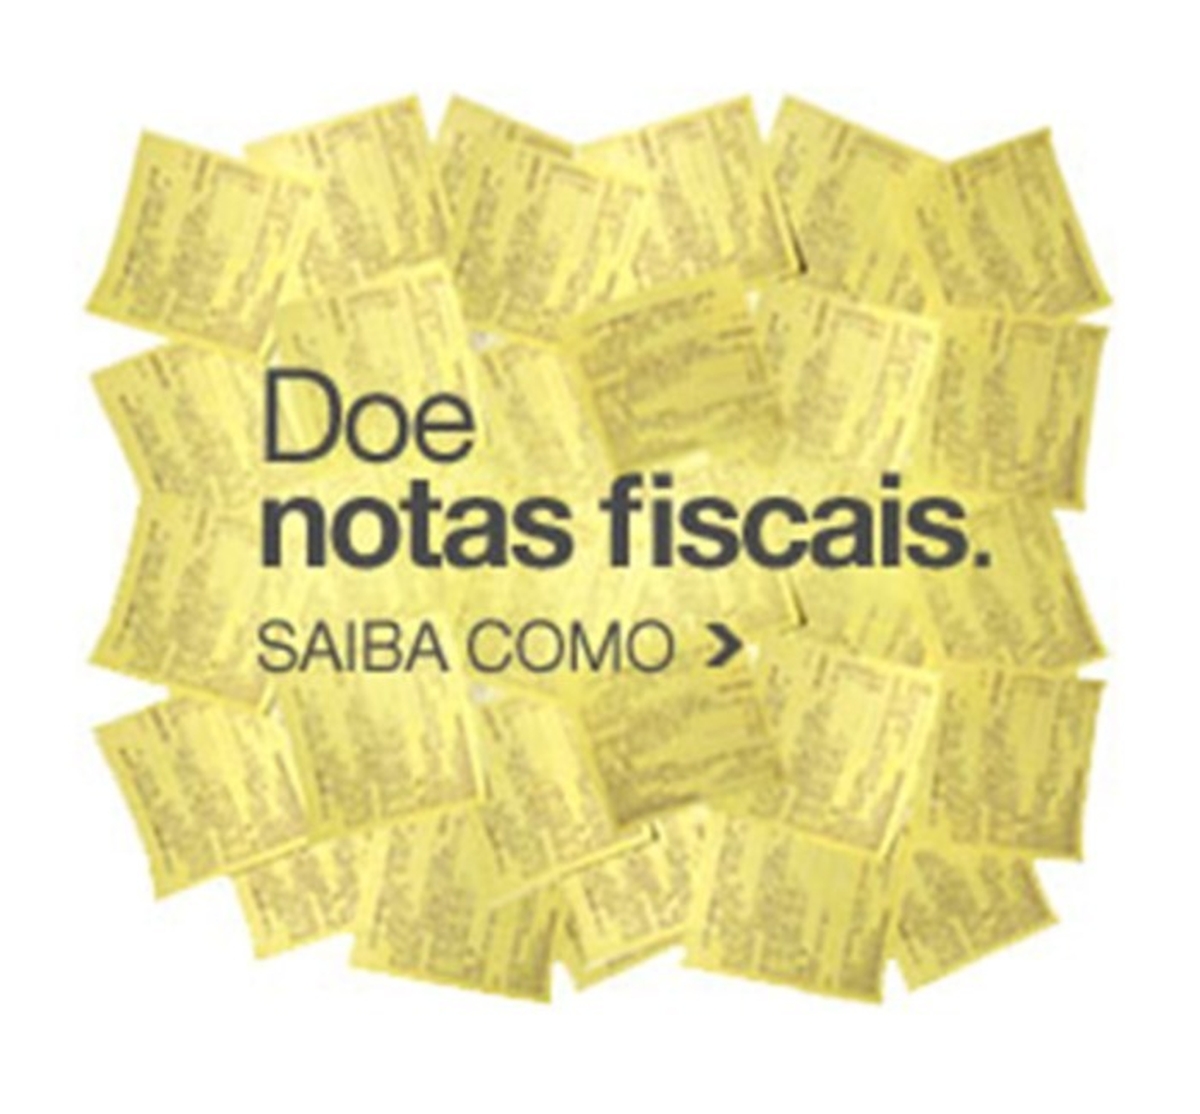 Doe notas fiscais - Programa Nota Fiscal Paulista